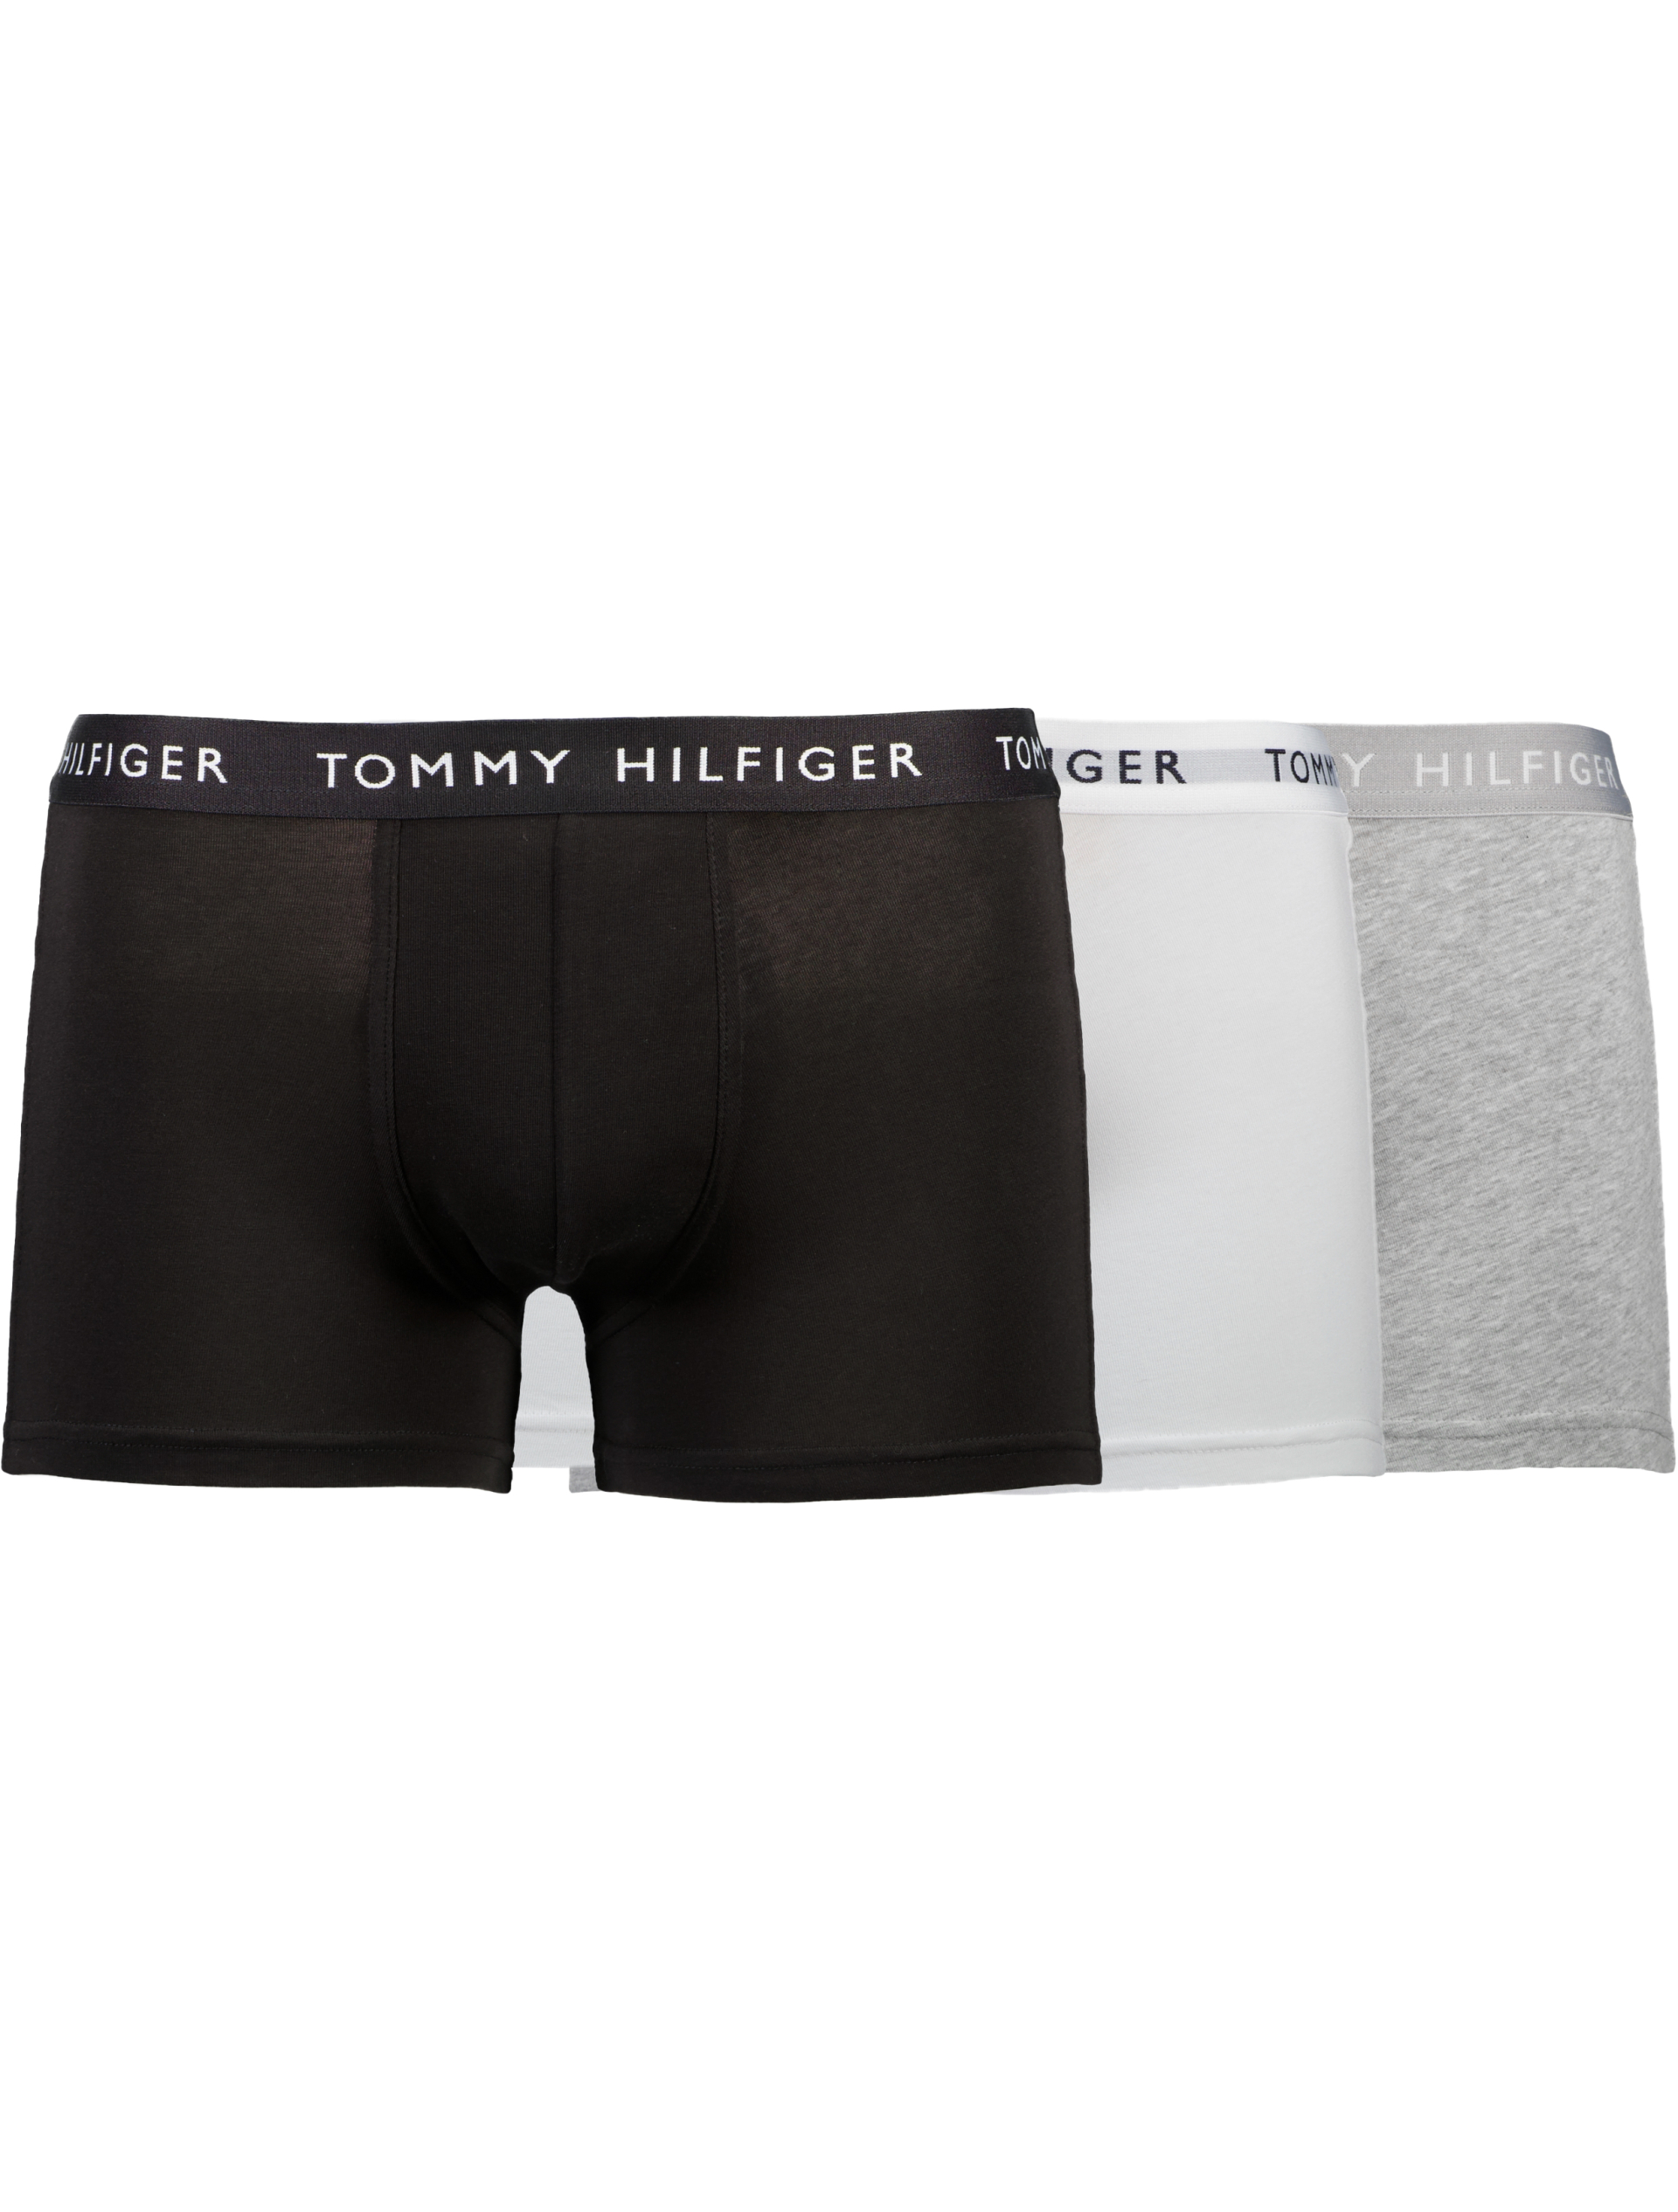 Tommy Hilfiger Tights multi / 0xk